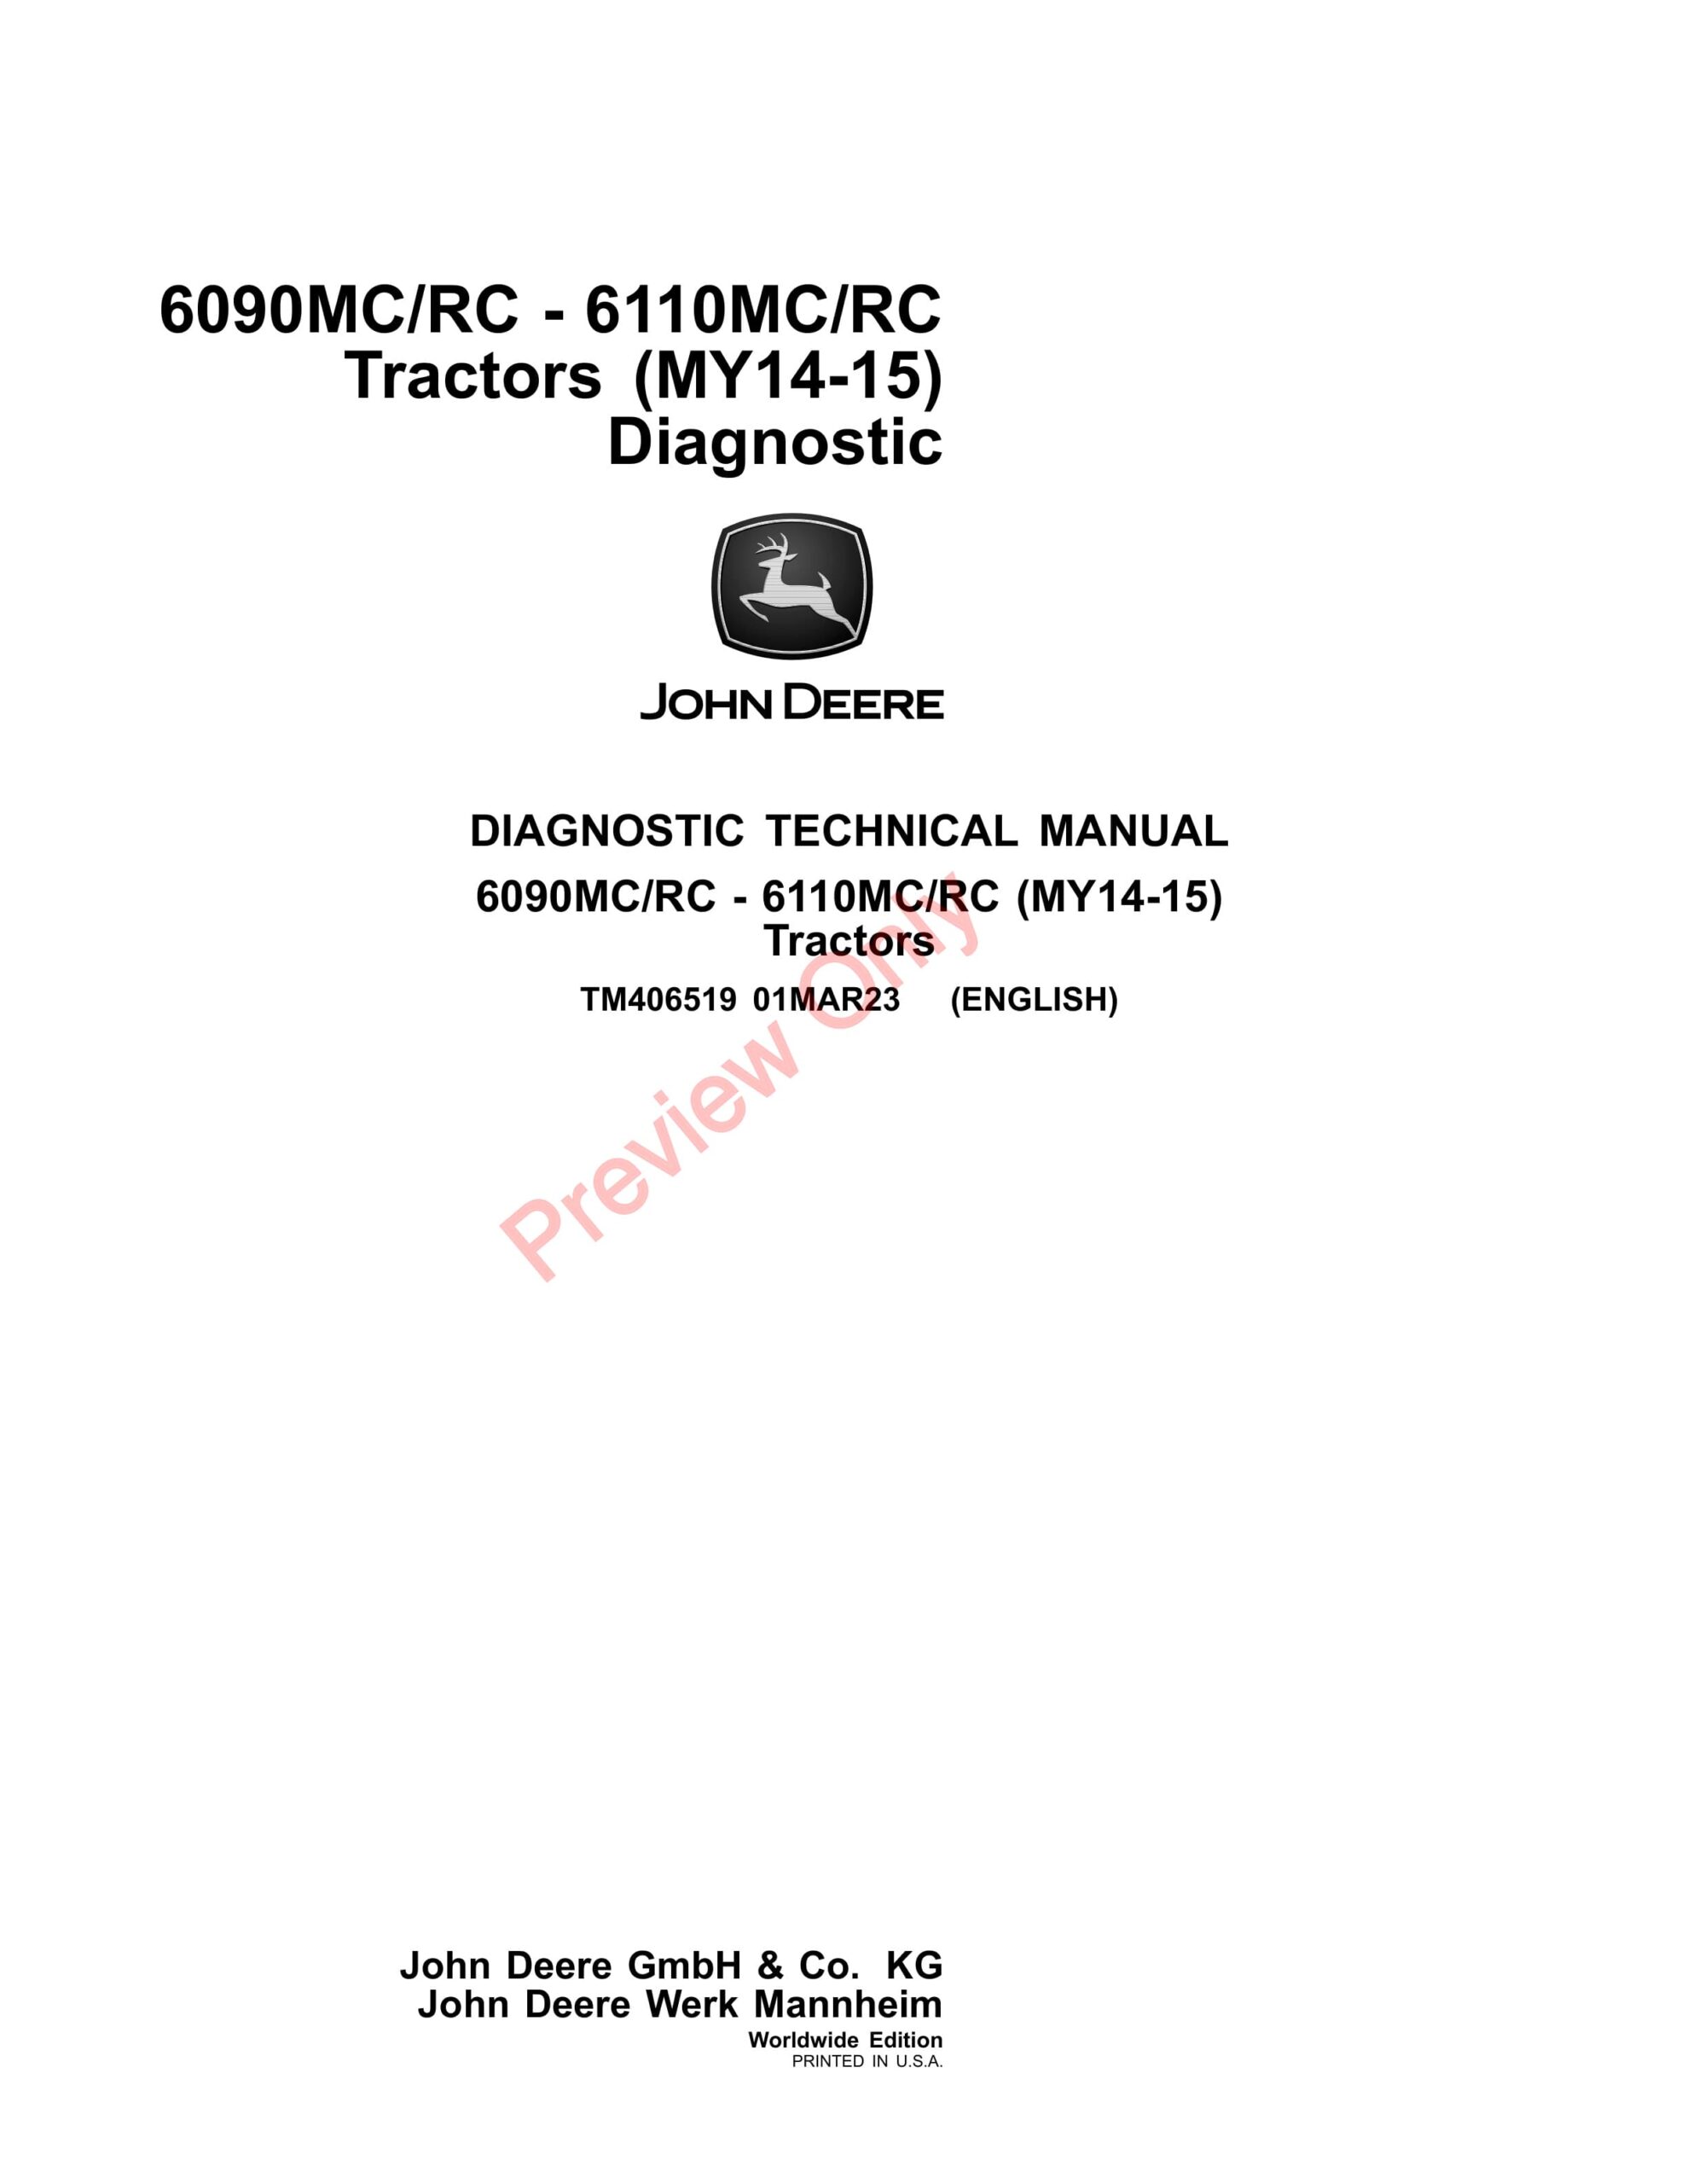 John Deere 6090MCRC – 6110MCRC Tractors (MY14-15) Diagnostic Technical Manual TM406519 01MAR23-1